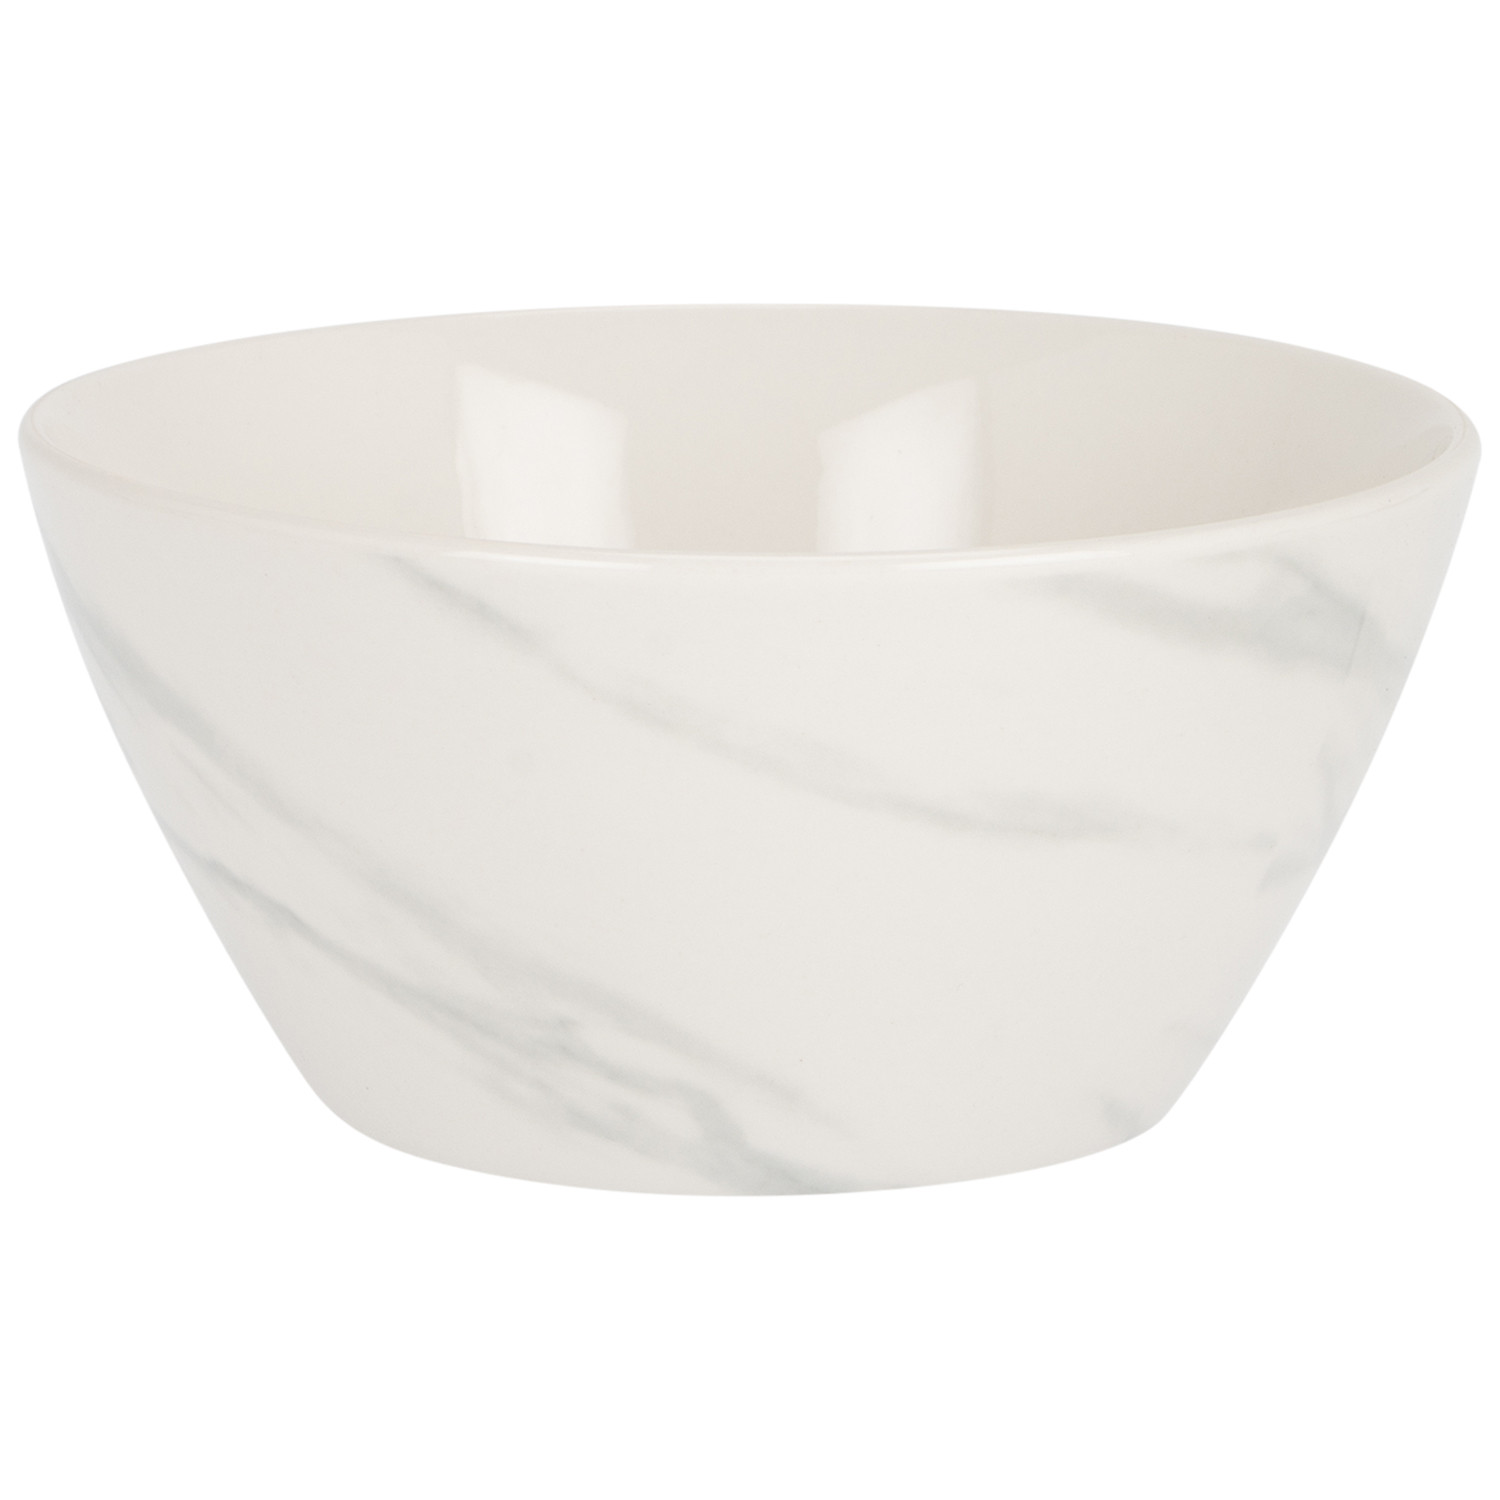 Marble Effect Porcelain Cereal Bowl Image